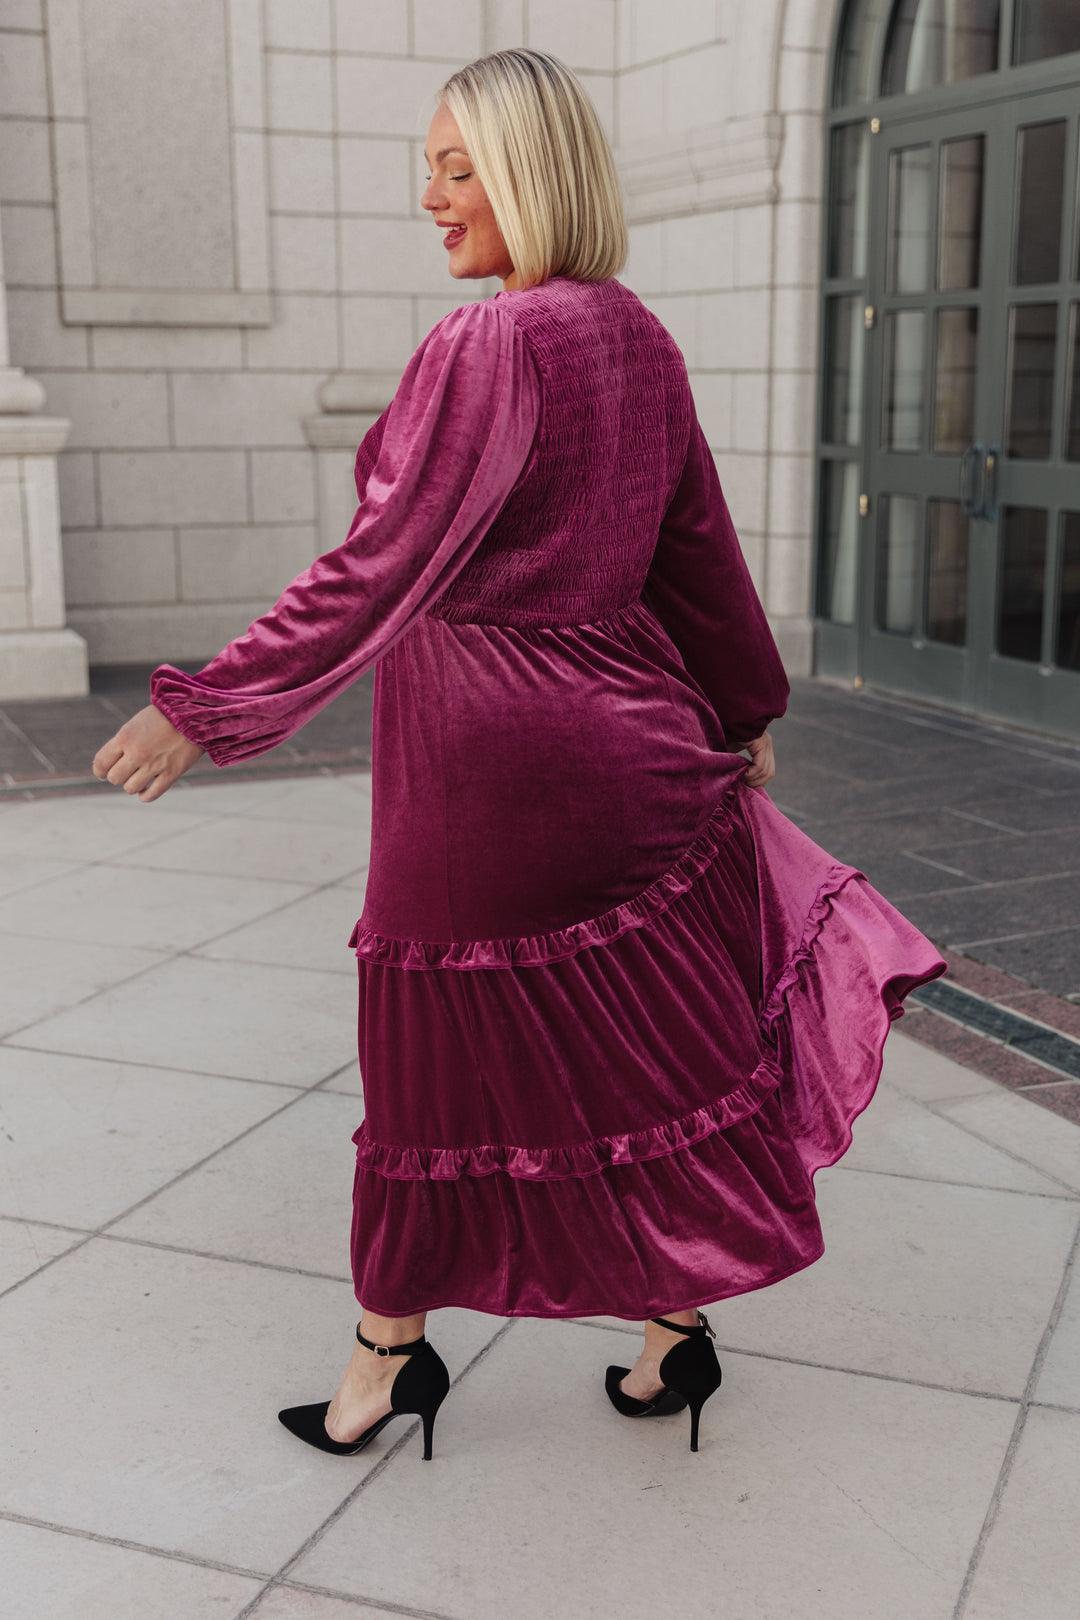 Velvet Flamenco Maxi Dress